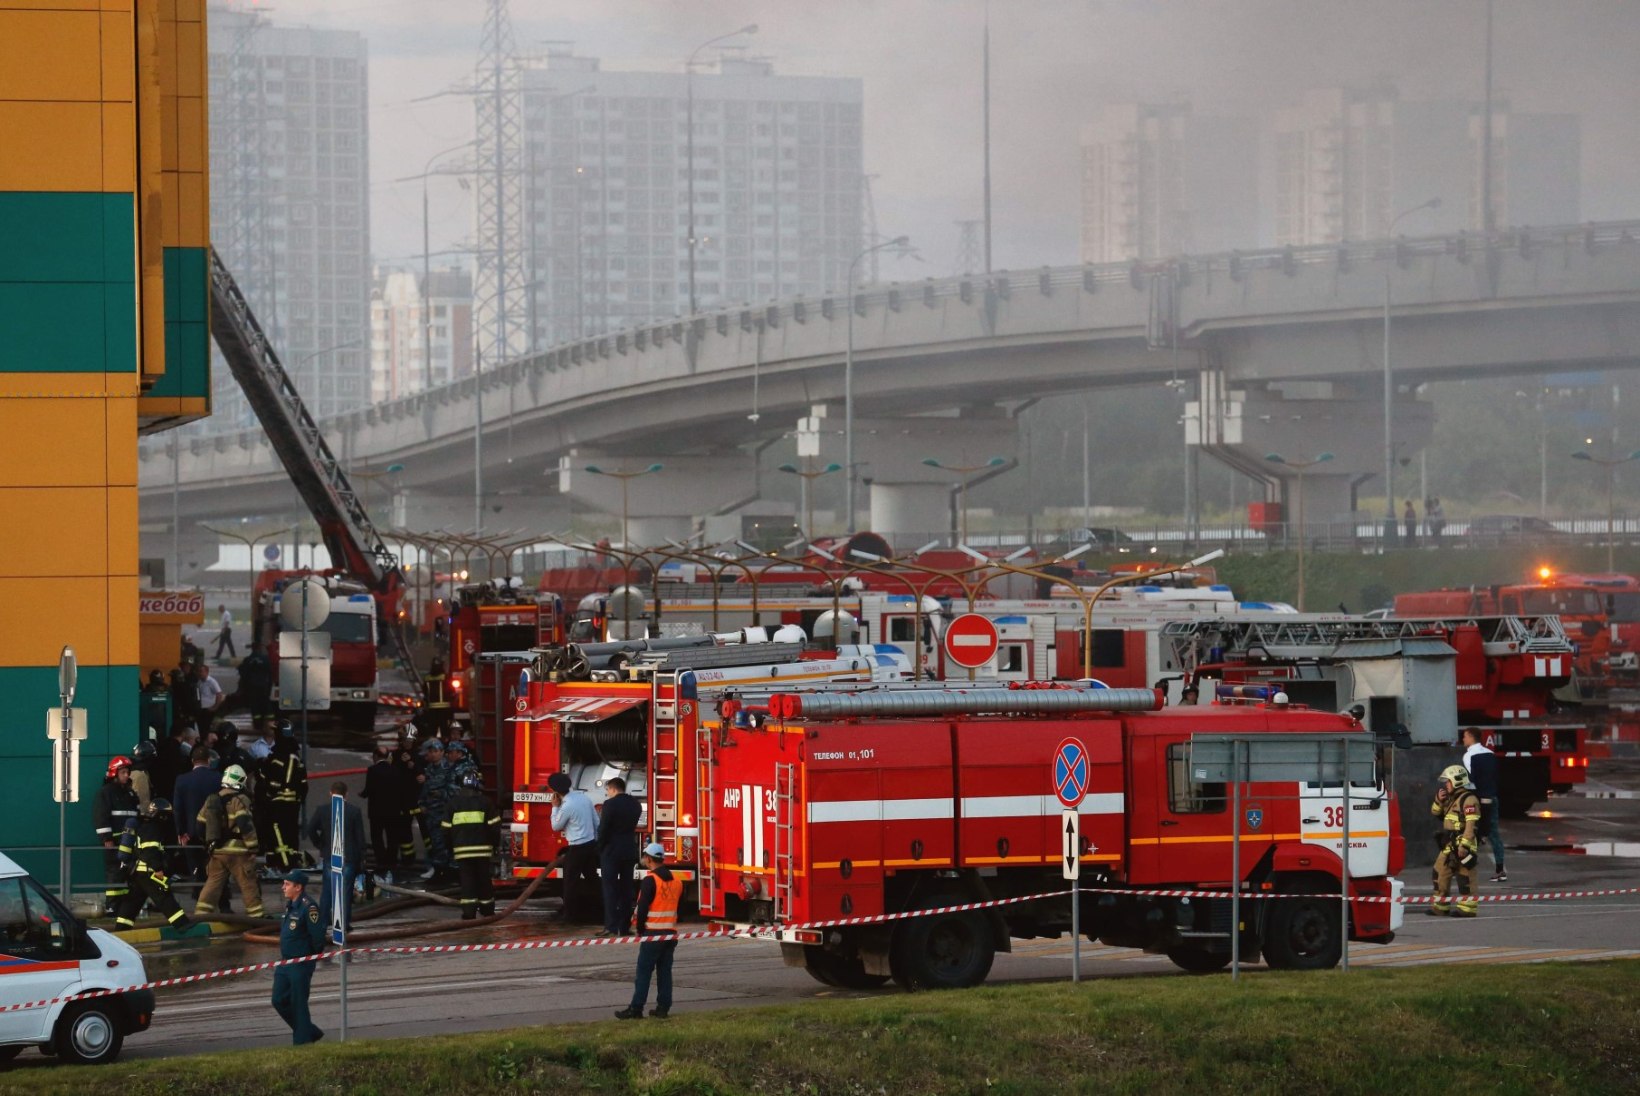 FOTOD JA VIDEOD | Moskva ostukeskuses puhkes tulekahju, viga sai 14 inimest